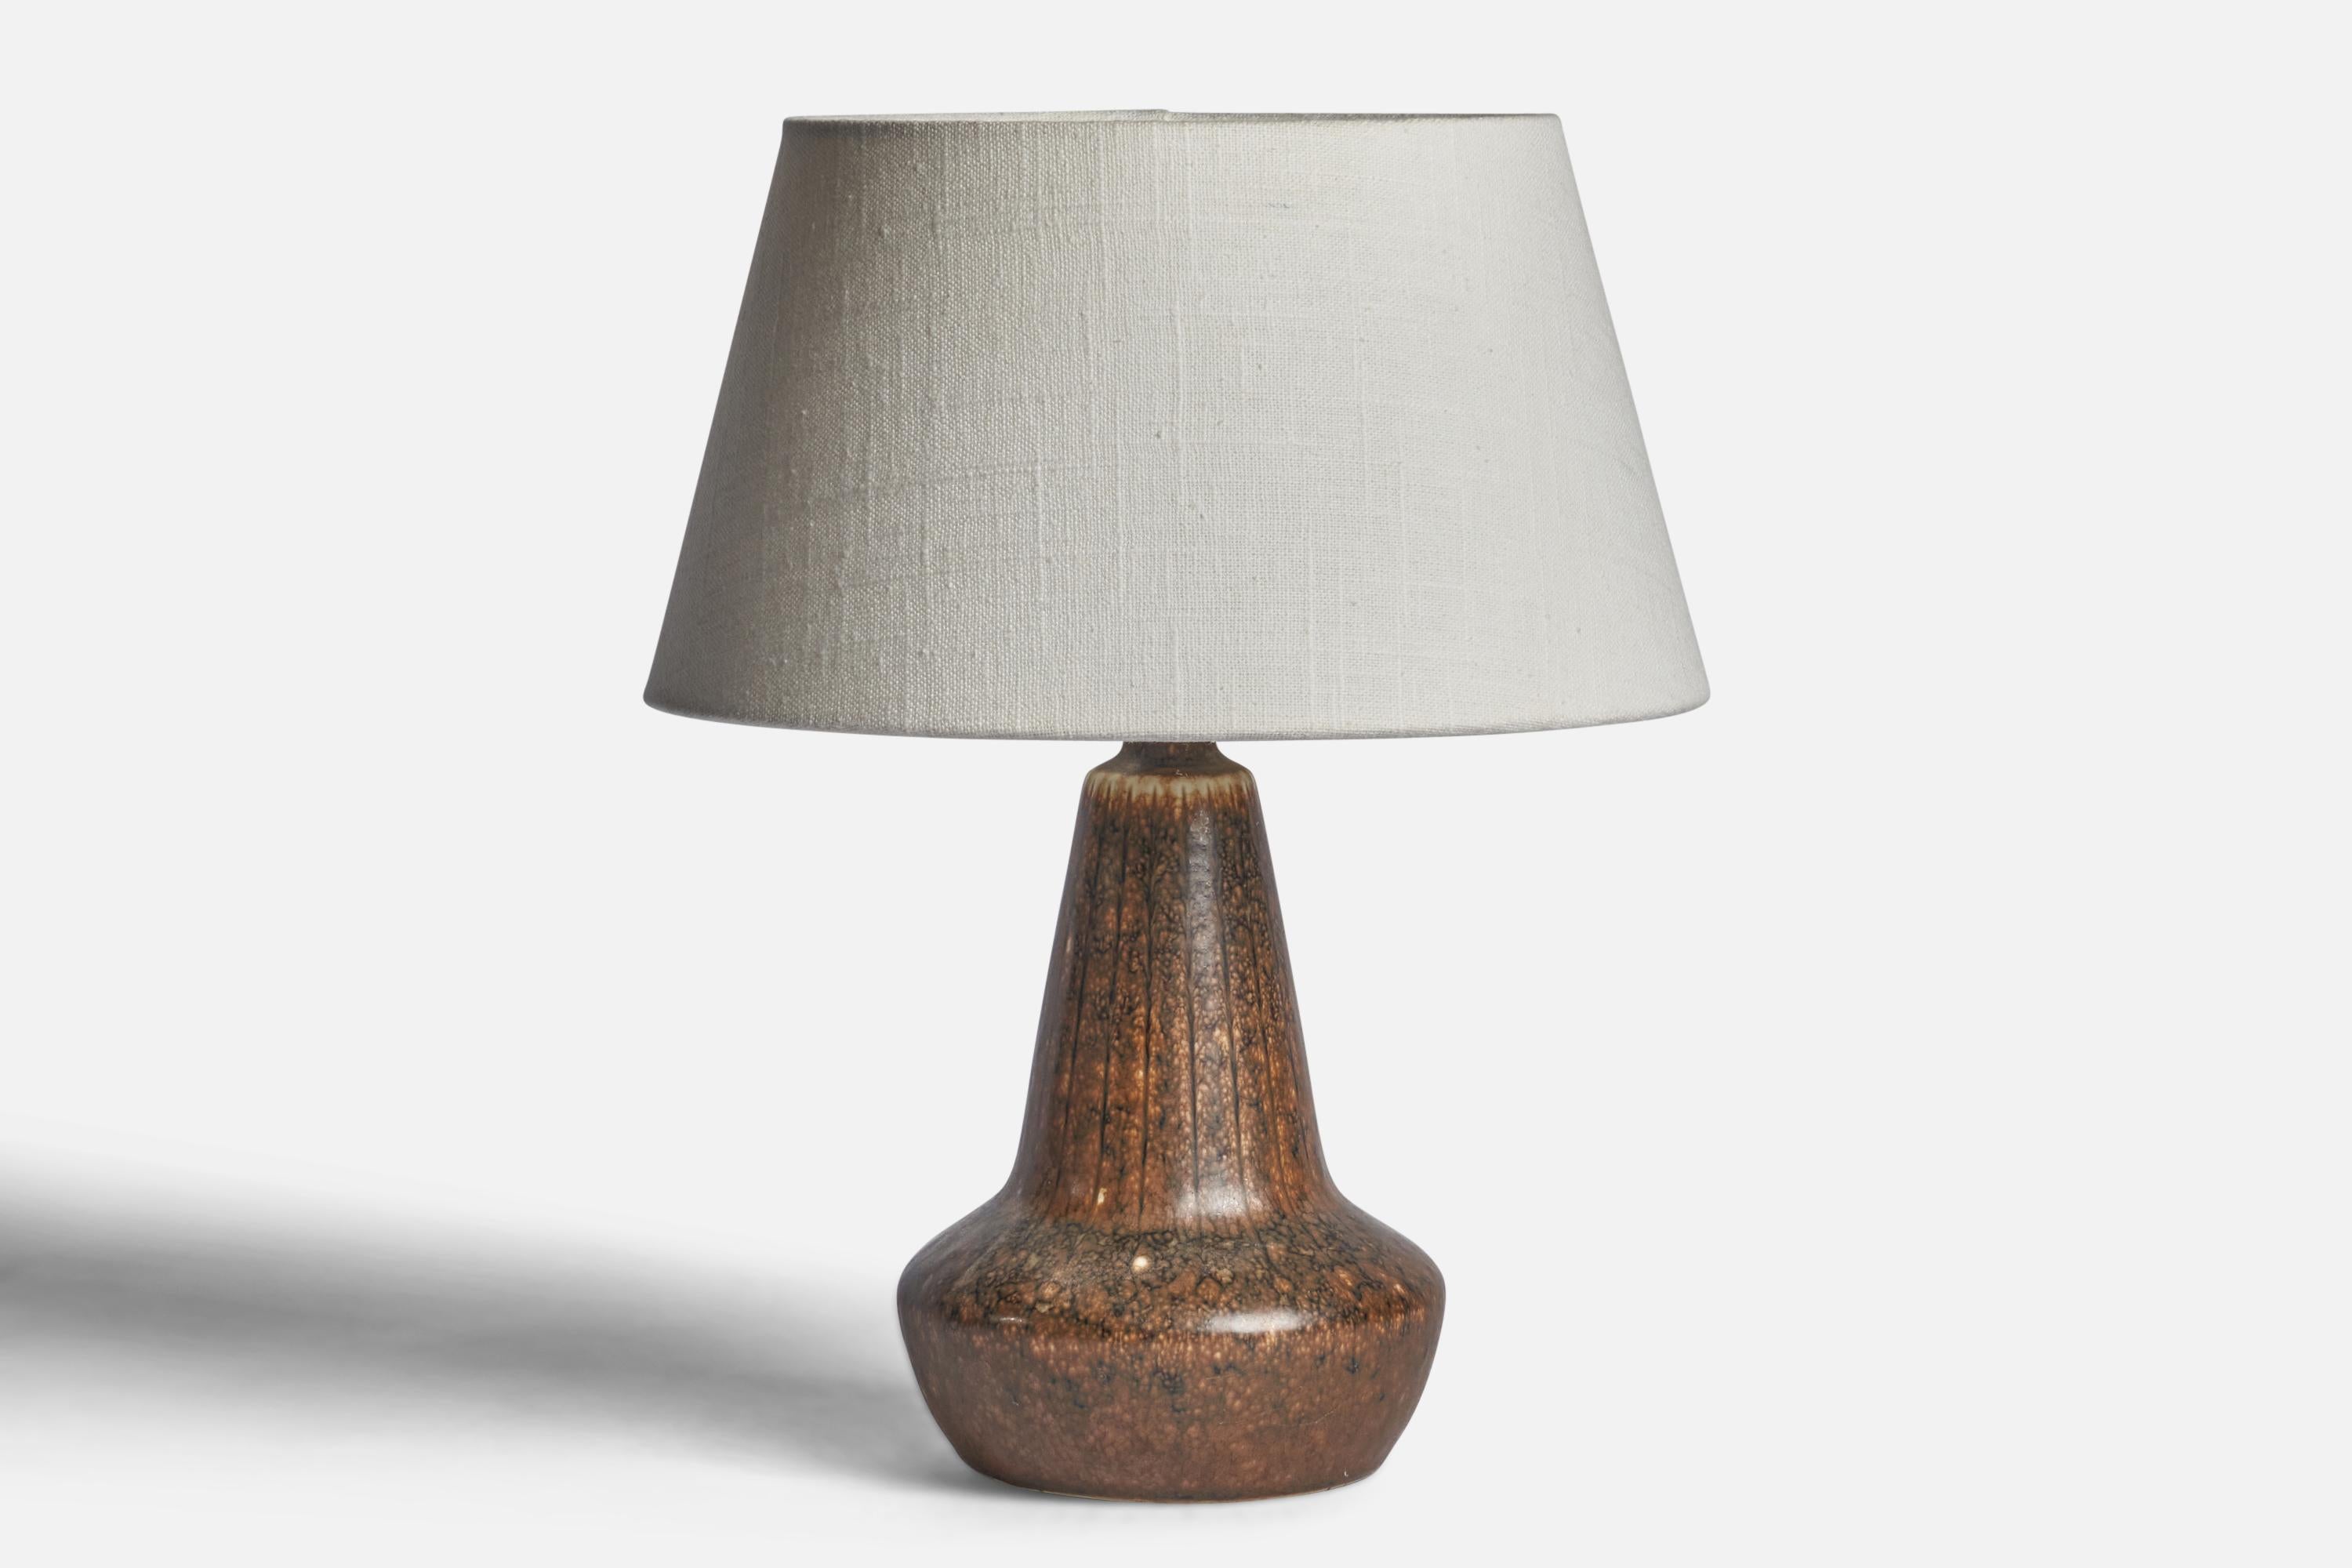 Lampe de table en grès émaillé brun, conçue par Gunnar Nylund et produite par Rörstrand, Suède, années 1940.

Dimensions de la lampe (pouces) : 9.75